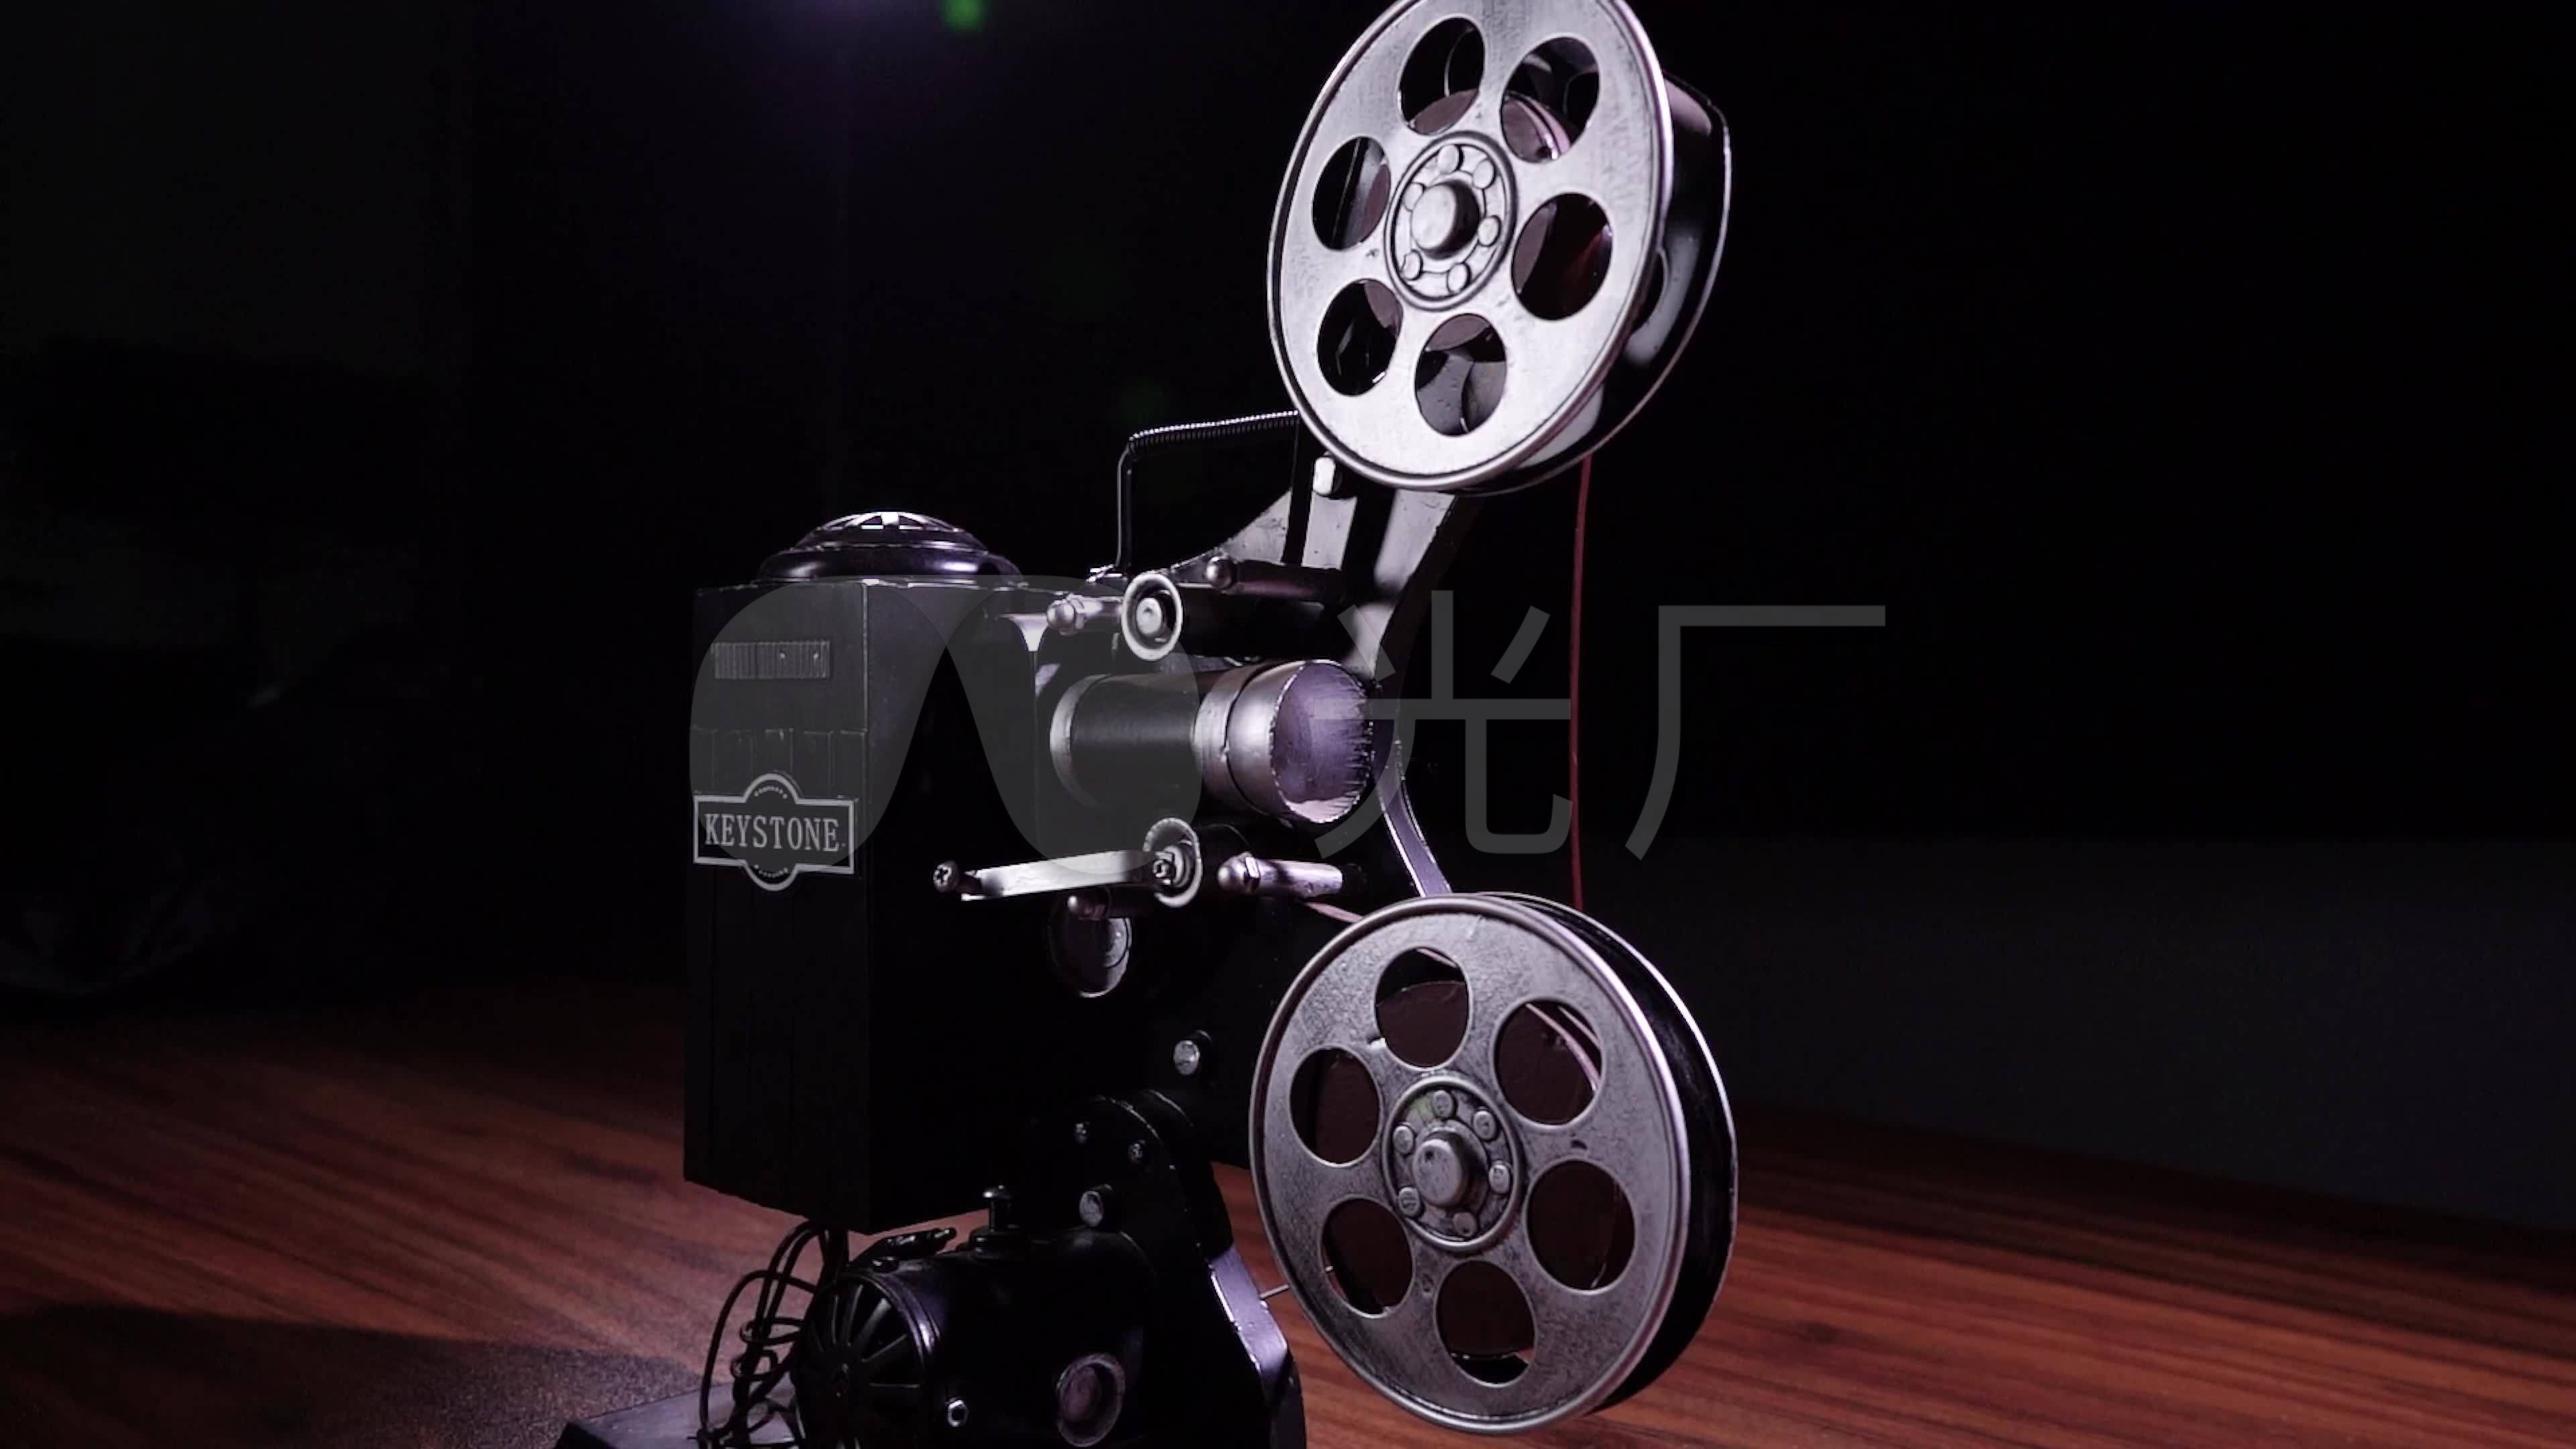 德国爱尔莫槽式机/Elmo16-CL16毫米/16mm电影放映机短焦广角-价格:7688元-se34859468-电影机/放映机-零售 ...